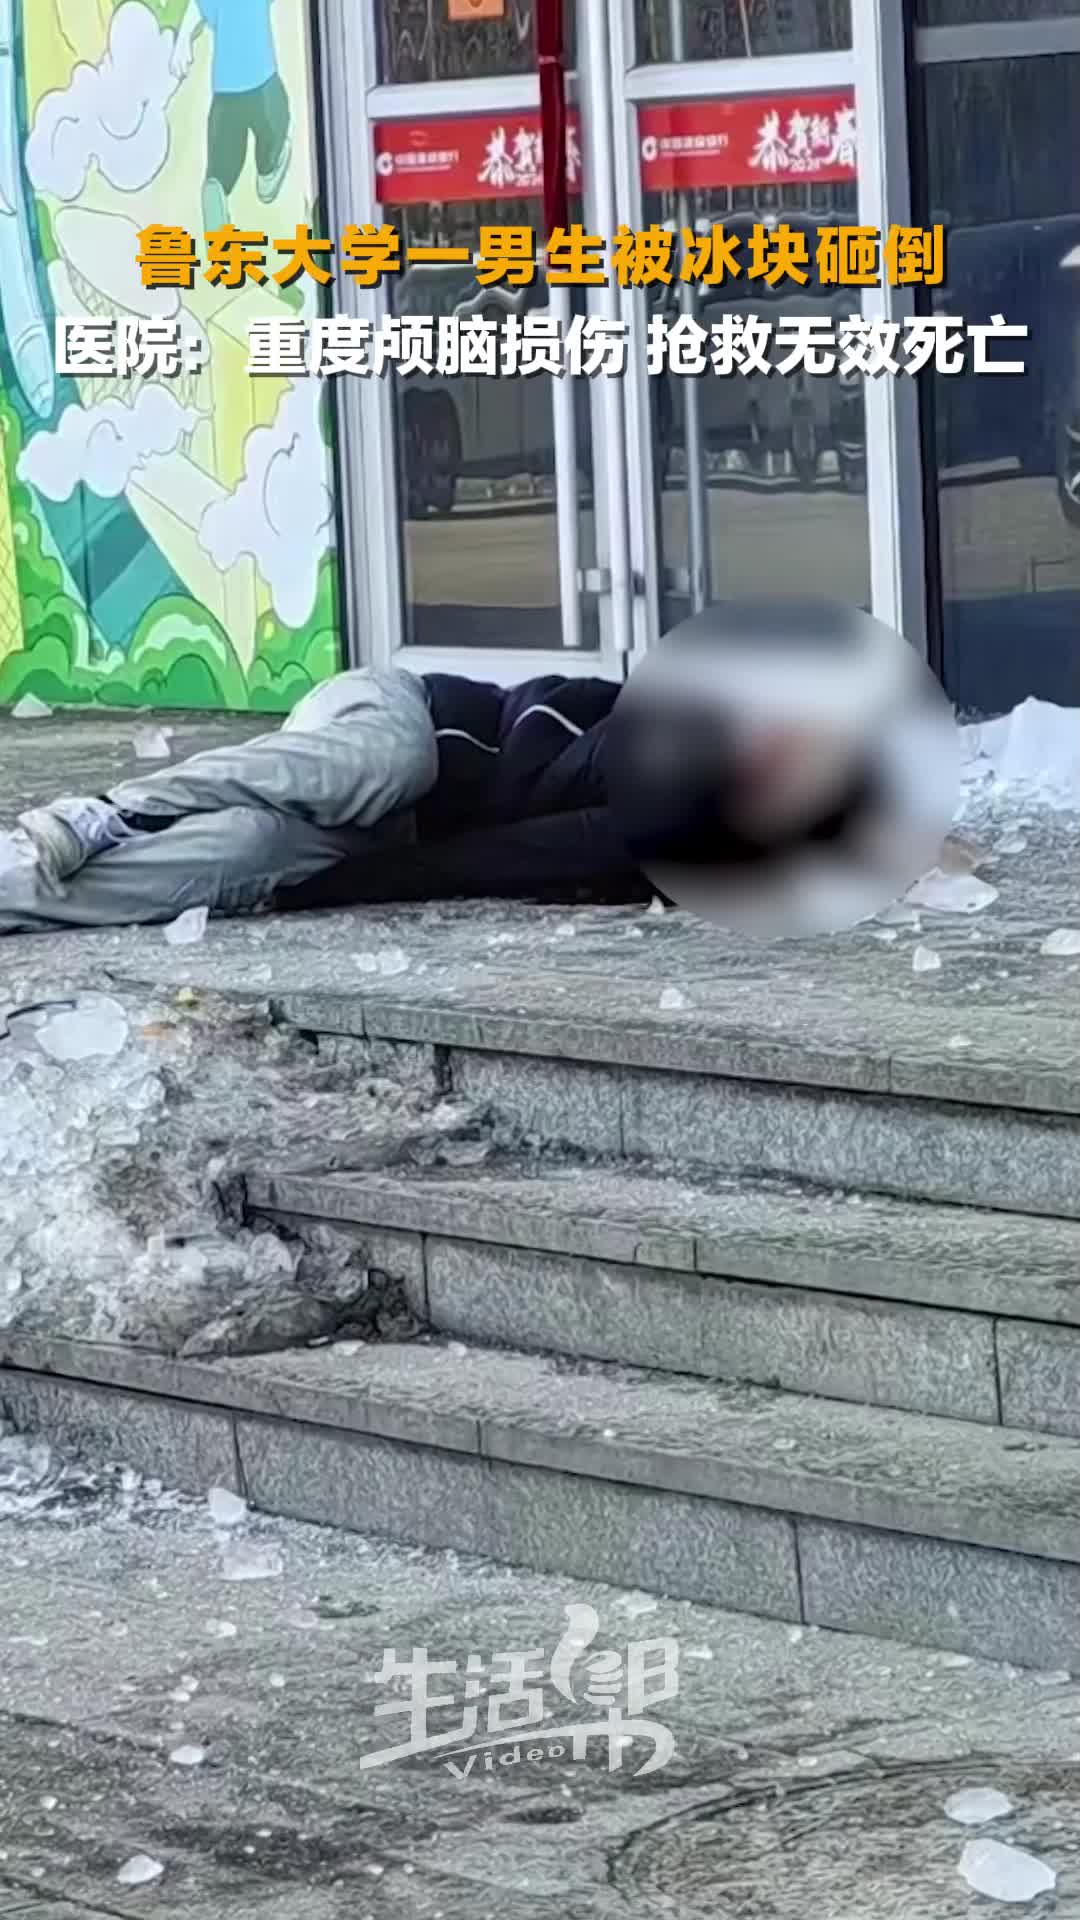 鲁东大学一男生被掉落的冰块砸倒重度颅脑损伤经抢救无效死亡